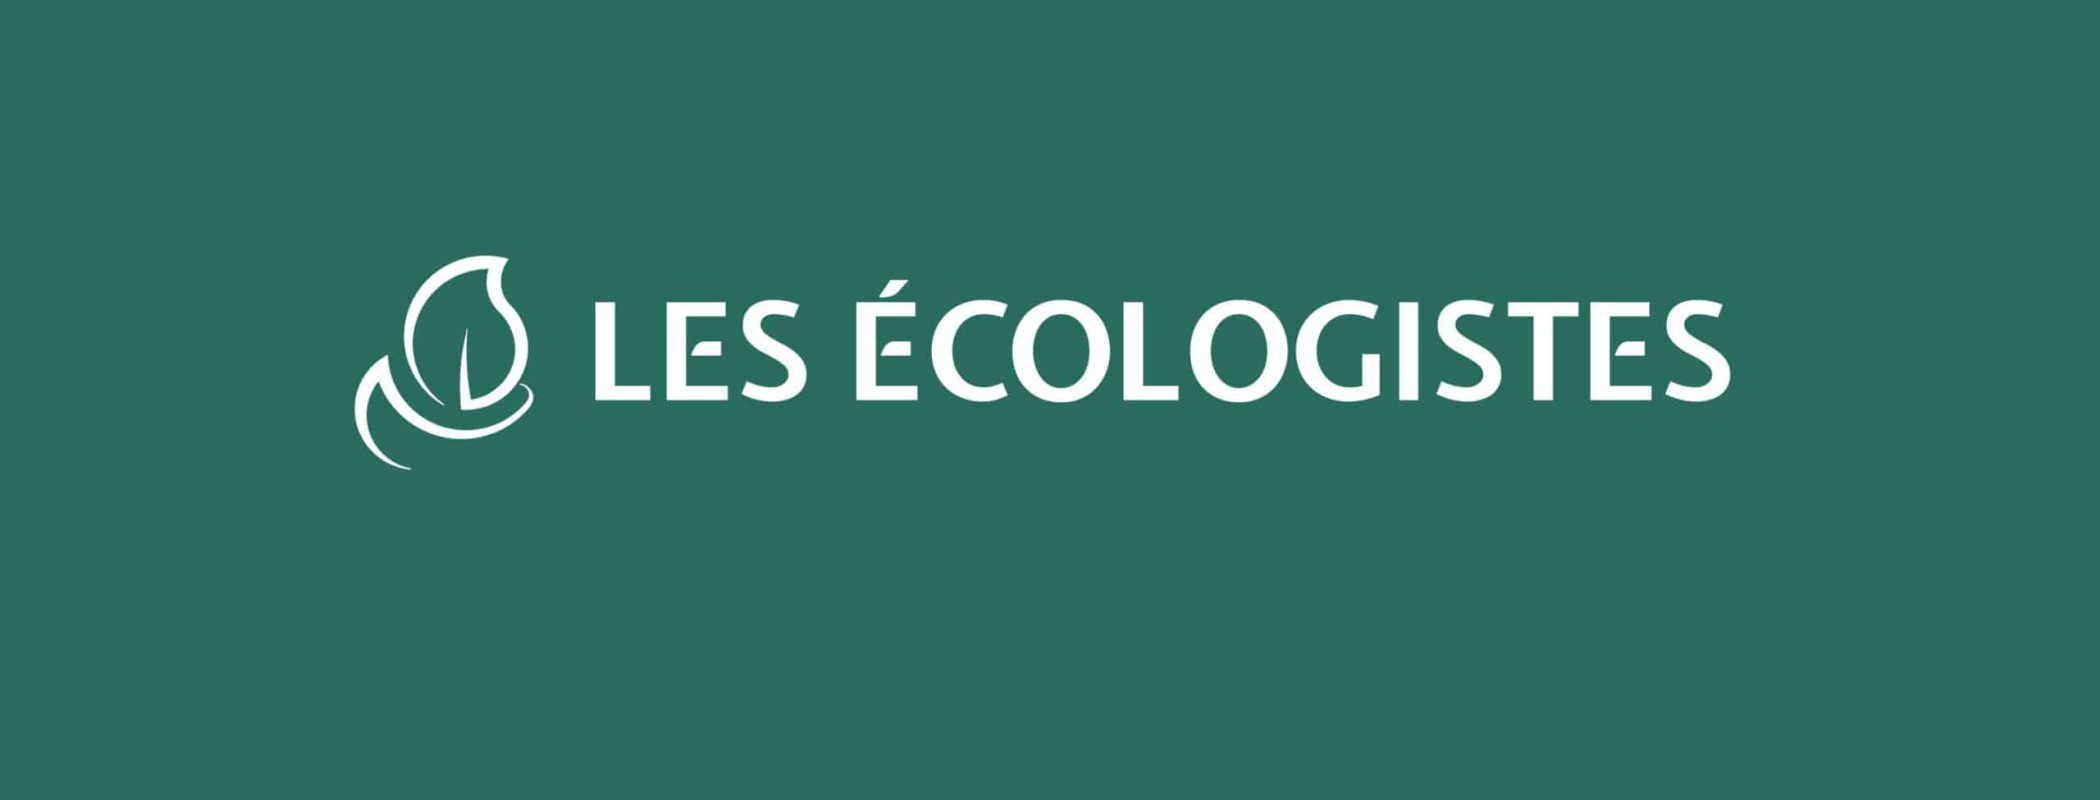 2022 09 Les écologistes - Bannière Facebook (2)